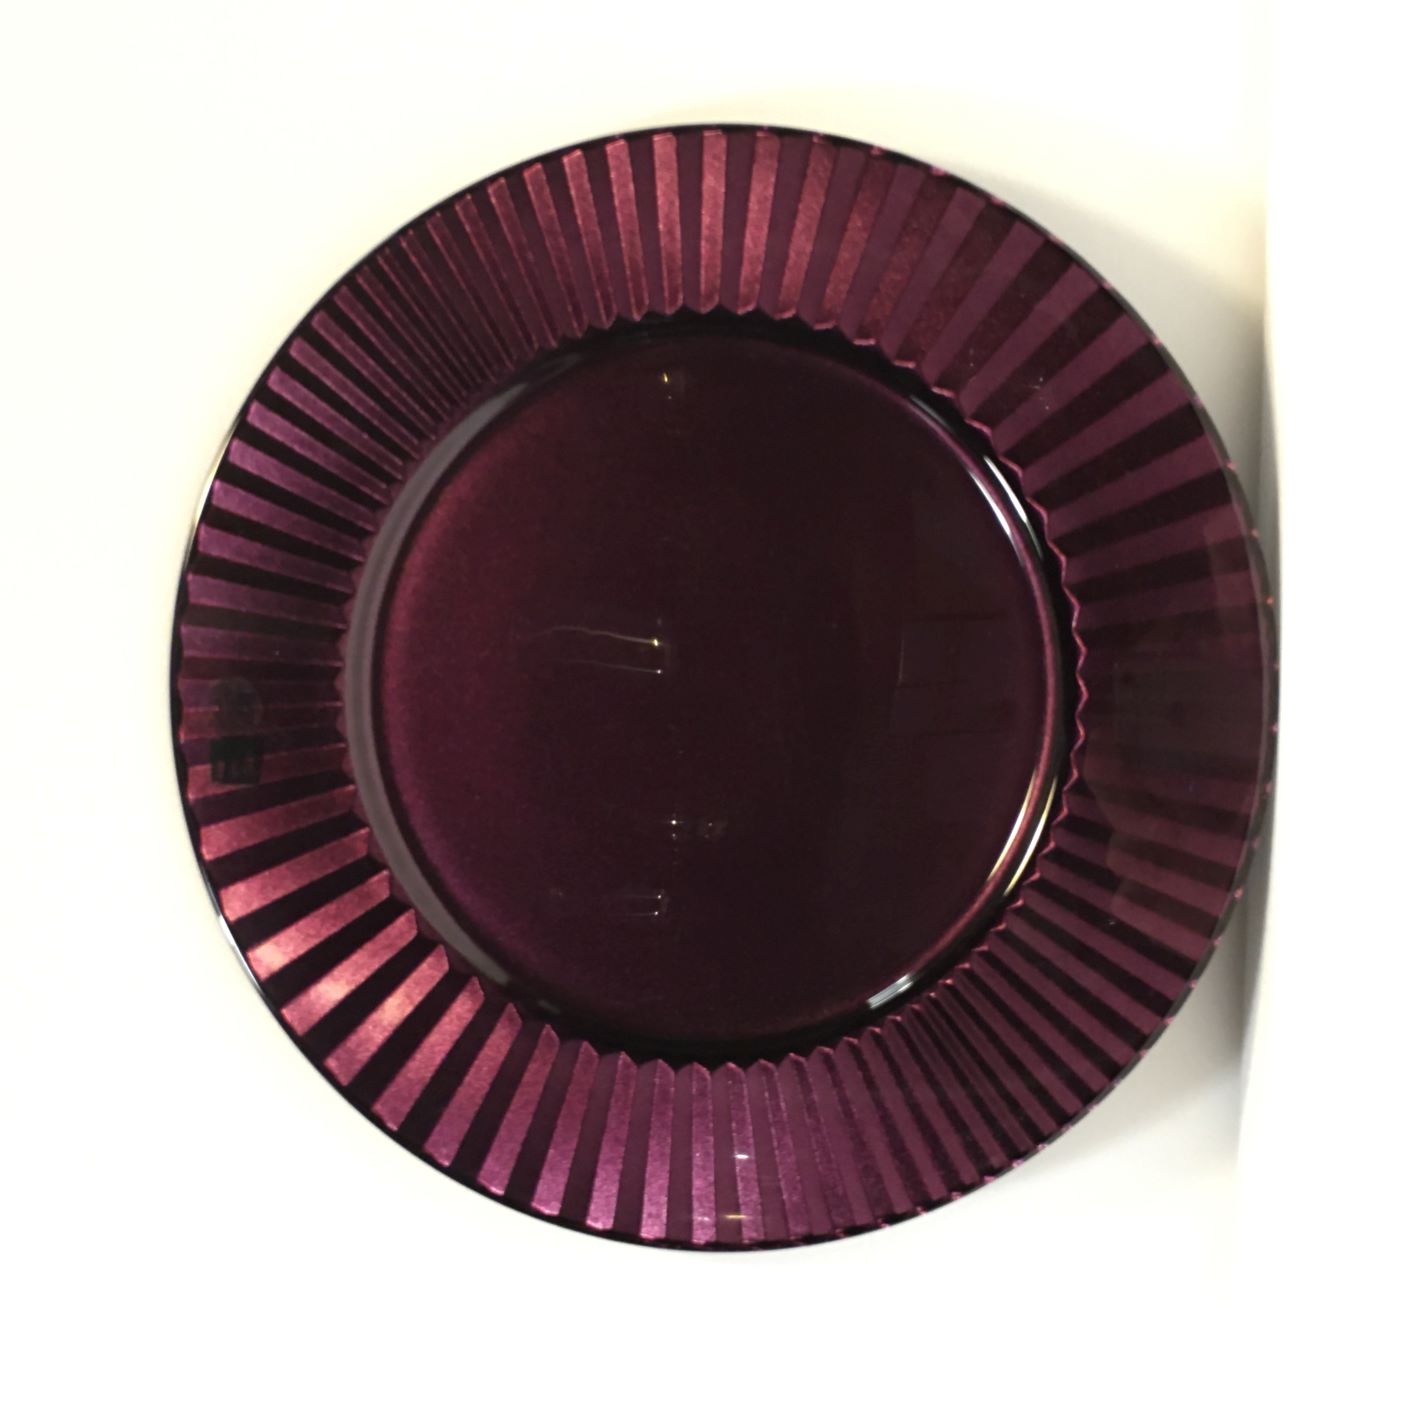 Sottopiatto vassoio tondo in vetro di colore viola. Dimensioni: diametro cm 32. In negozio e online su tuttochic.it